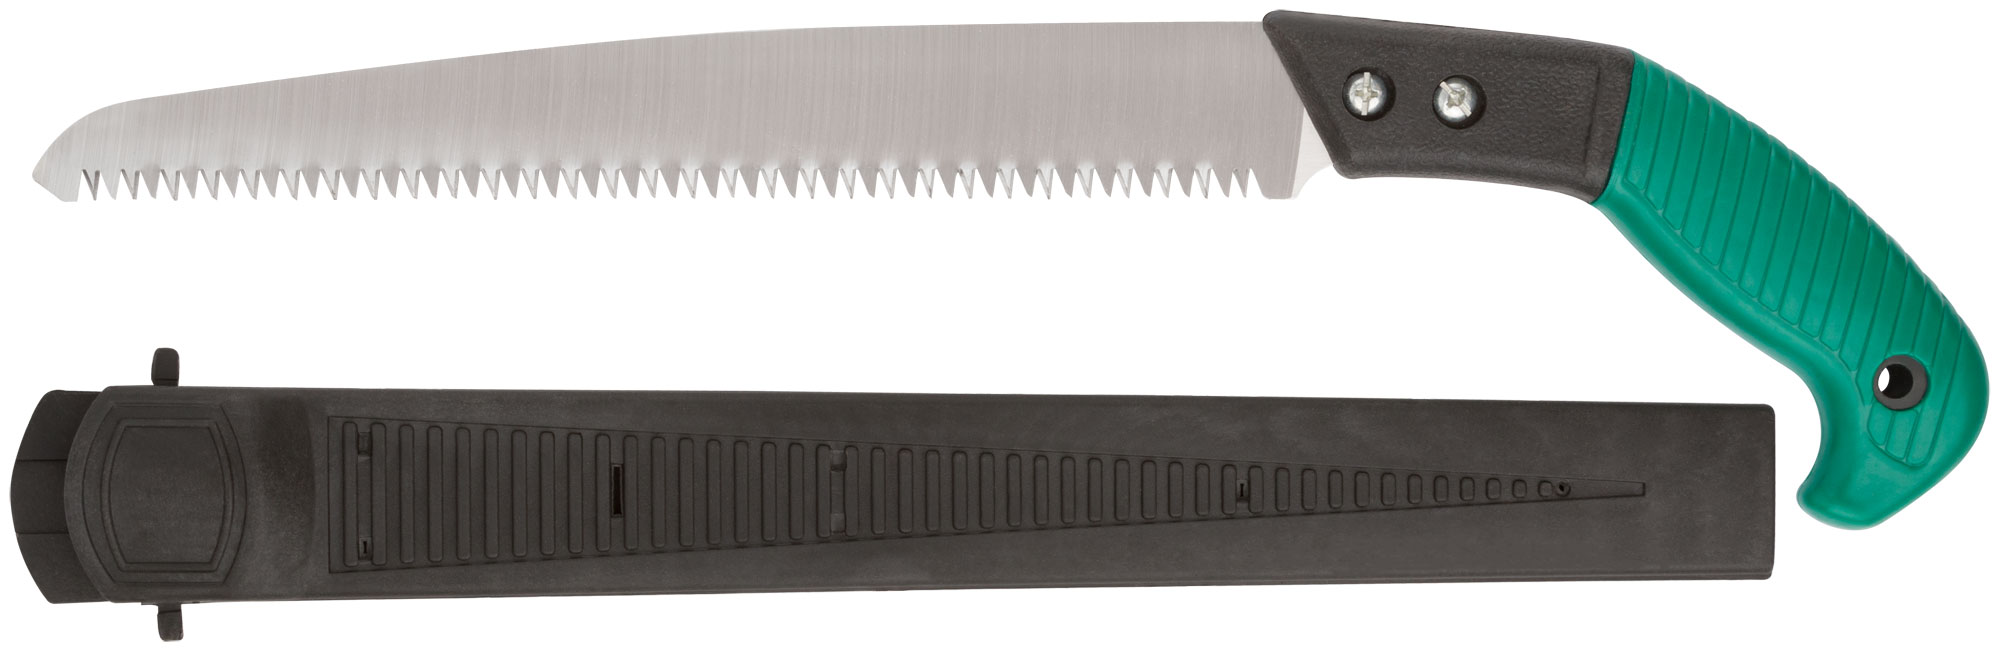 Ножовка садовая с ножнами, 300 мм, FIT 40595 ножовка садовая складная 390 мм прорезиненная ручка